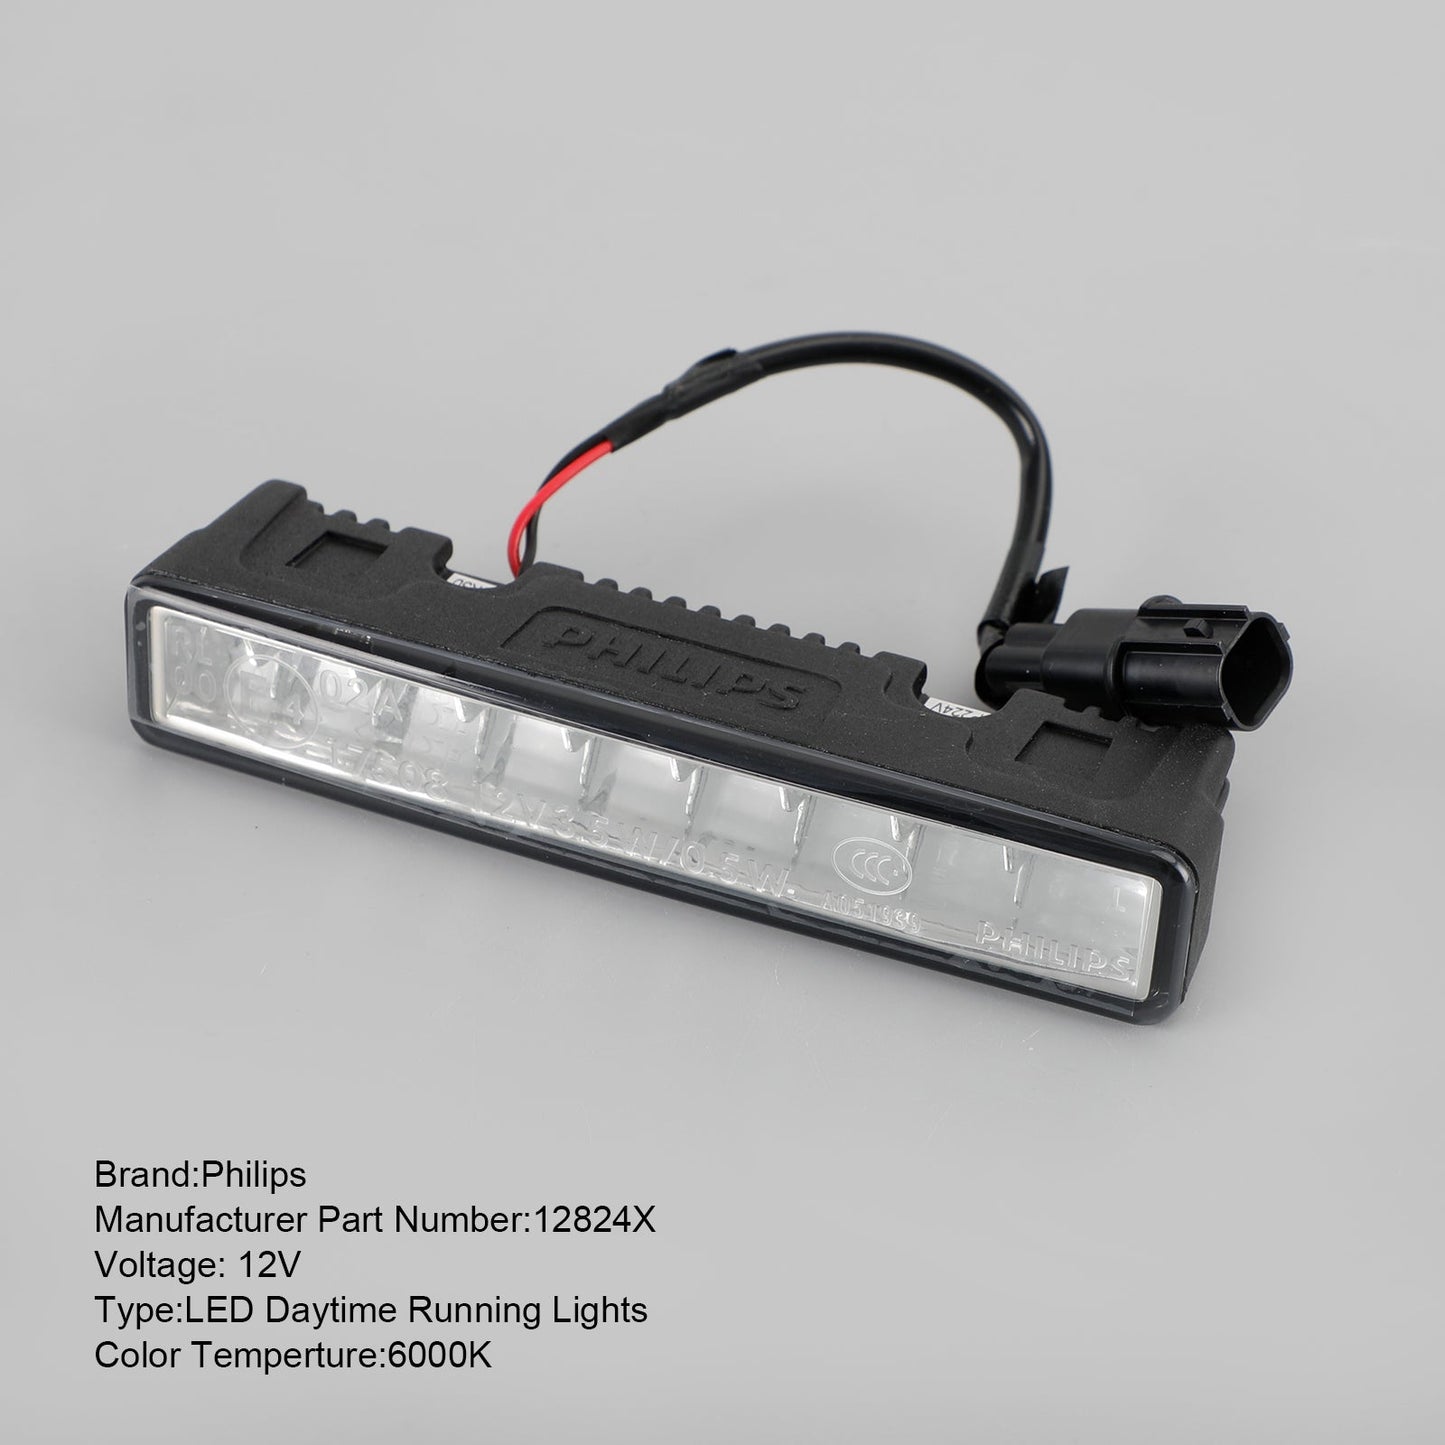 For Philips 12824X LED Daytime Running Lights For Honda 9 LED Light Source 6000K